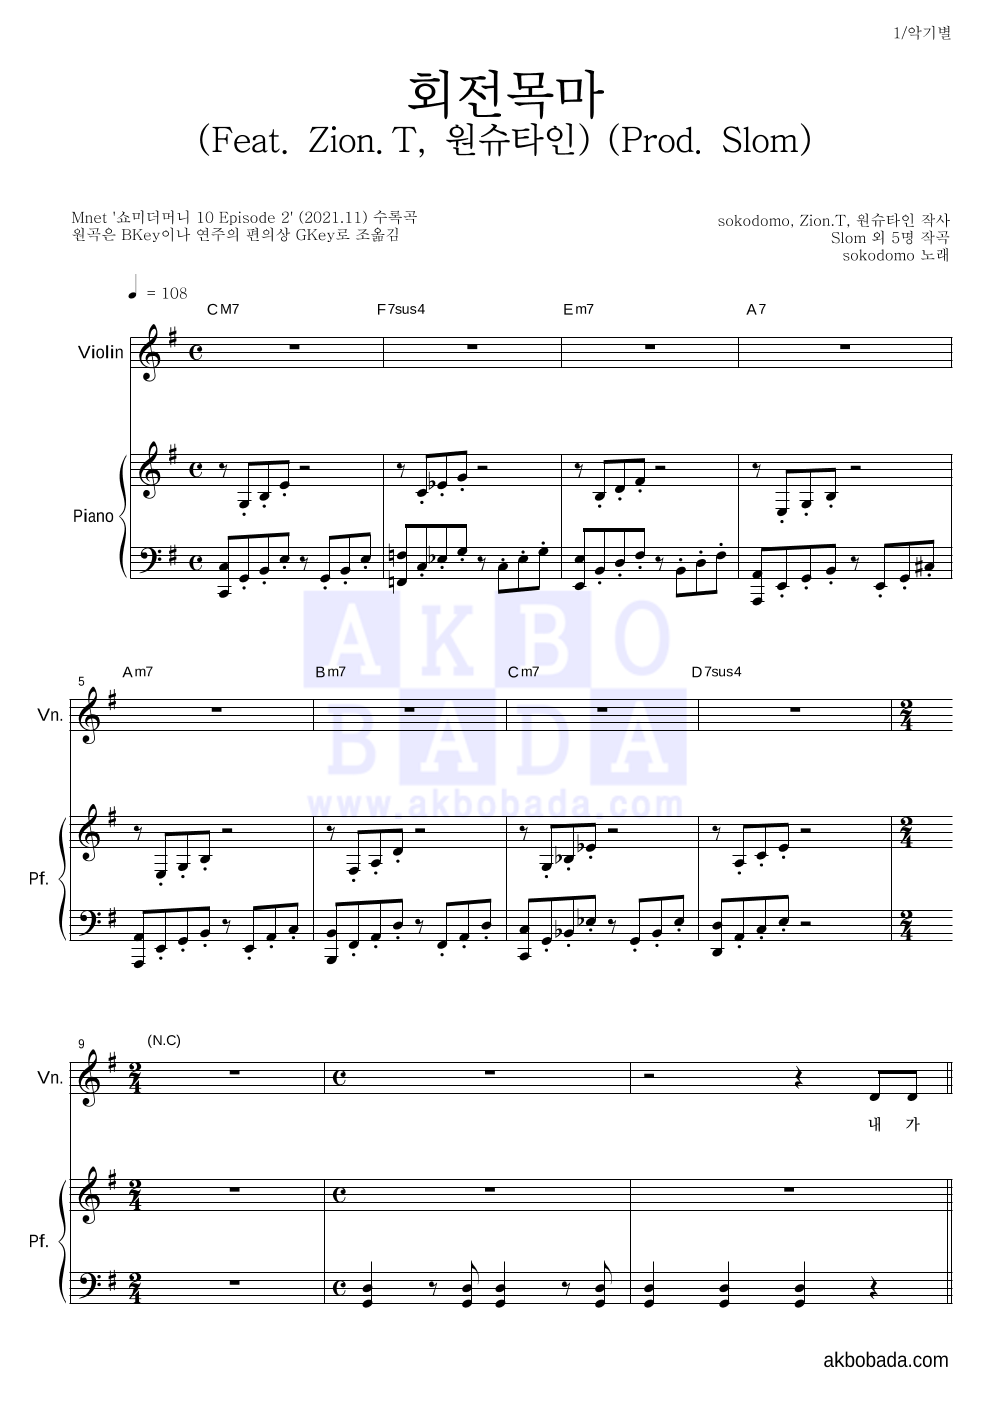 sokodomo - 회전목마 (Feat. Zion.T, 원슈타인) (Prod. Slom) 바이올린&피아노 악보 